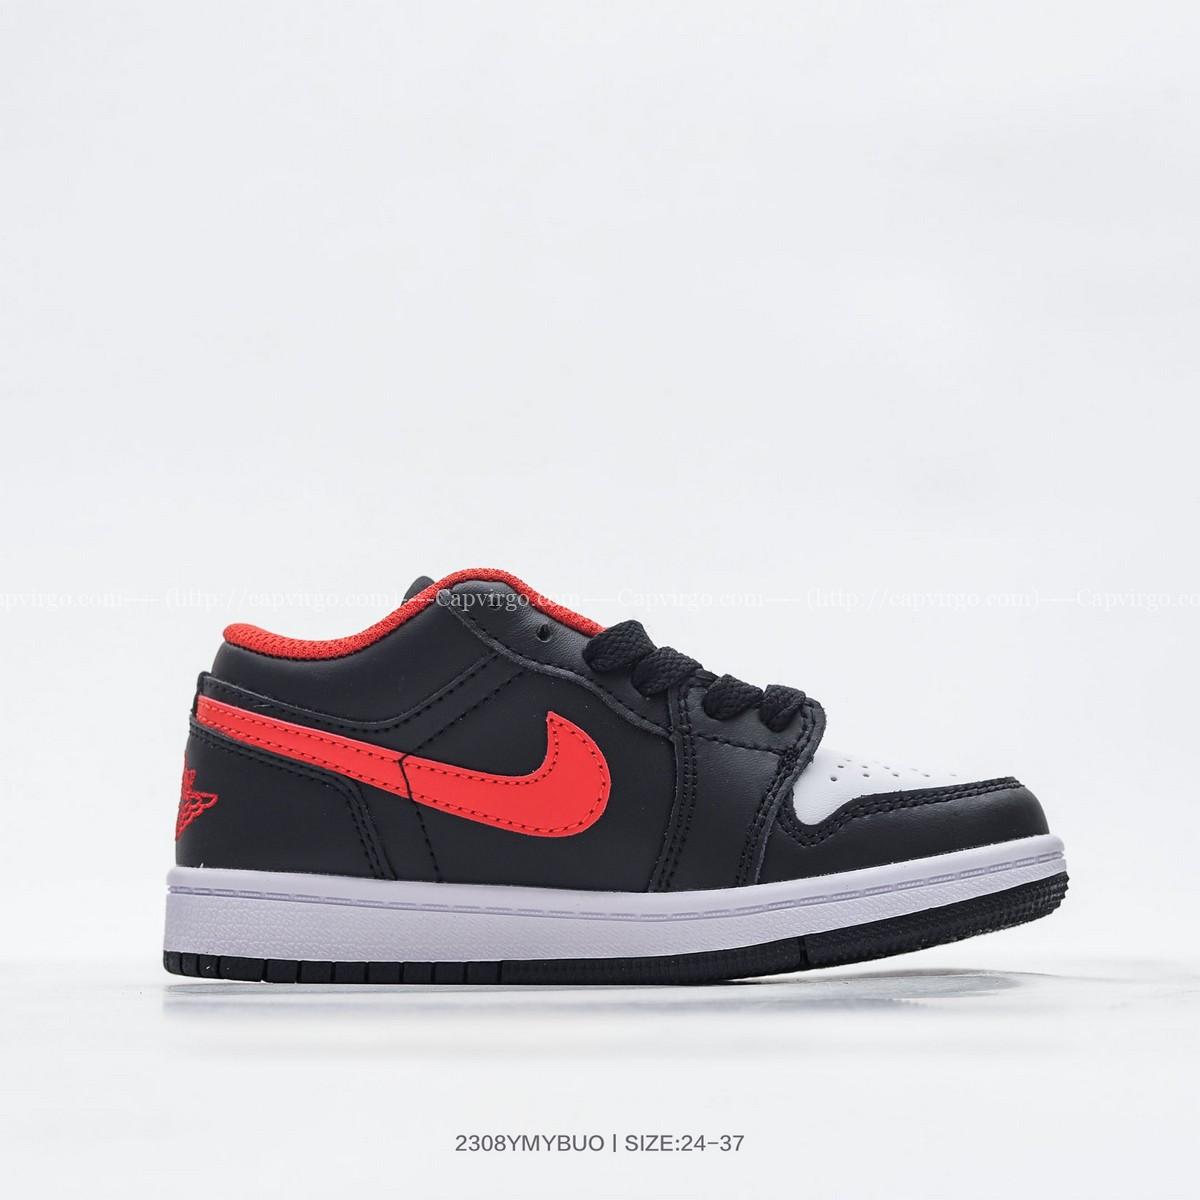 Giày Air Jordan 1 trẻ em đen mũi trắng logo đỏ